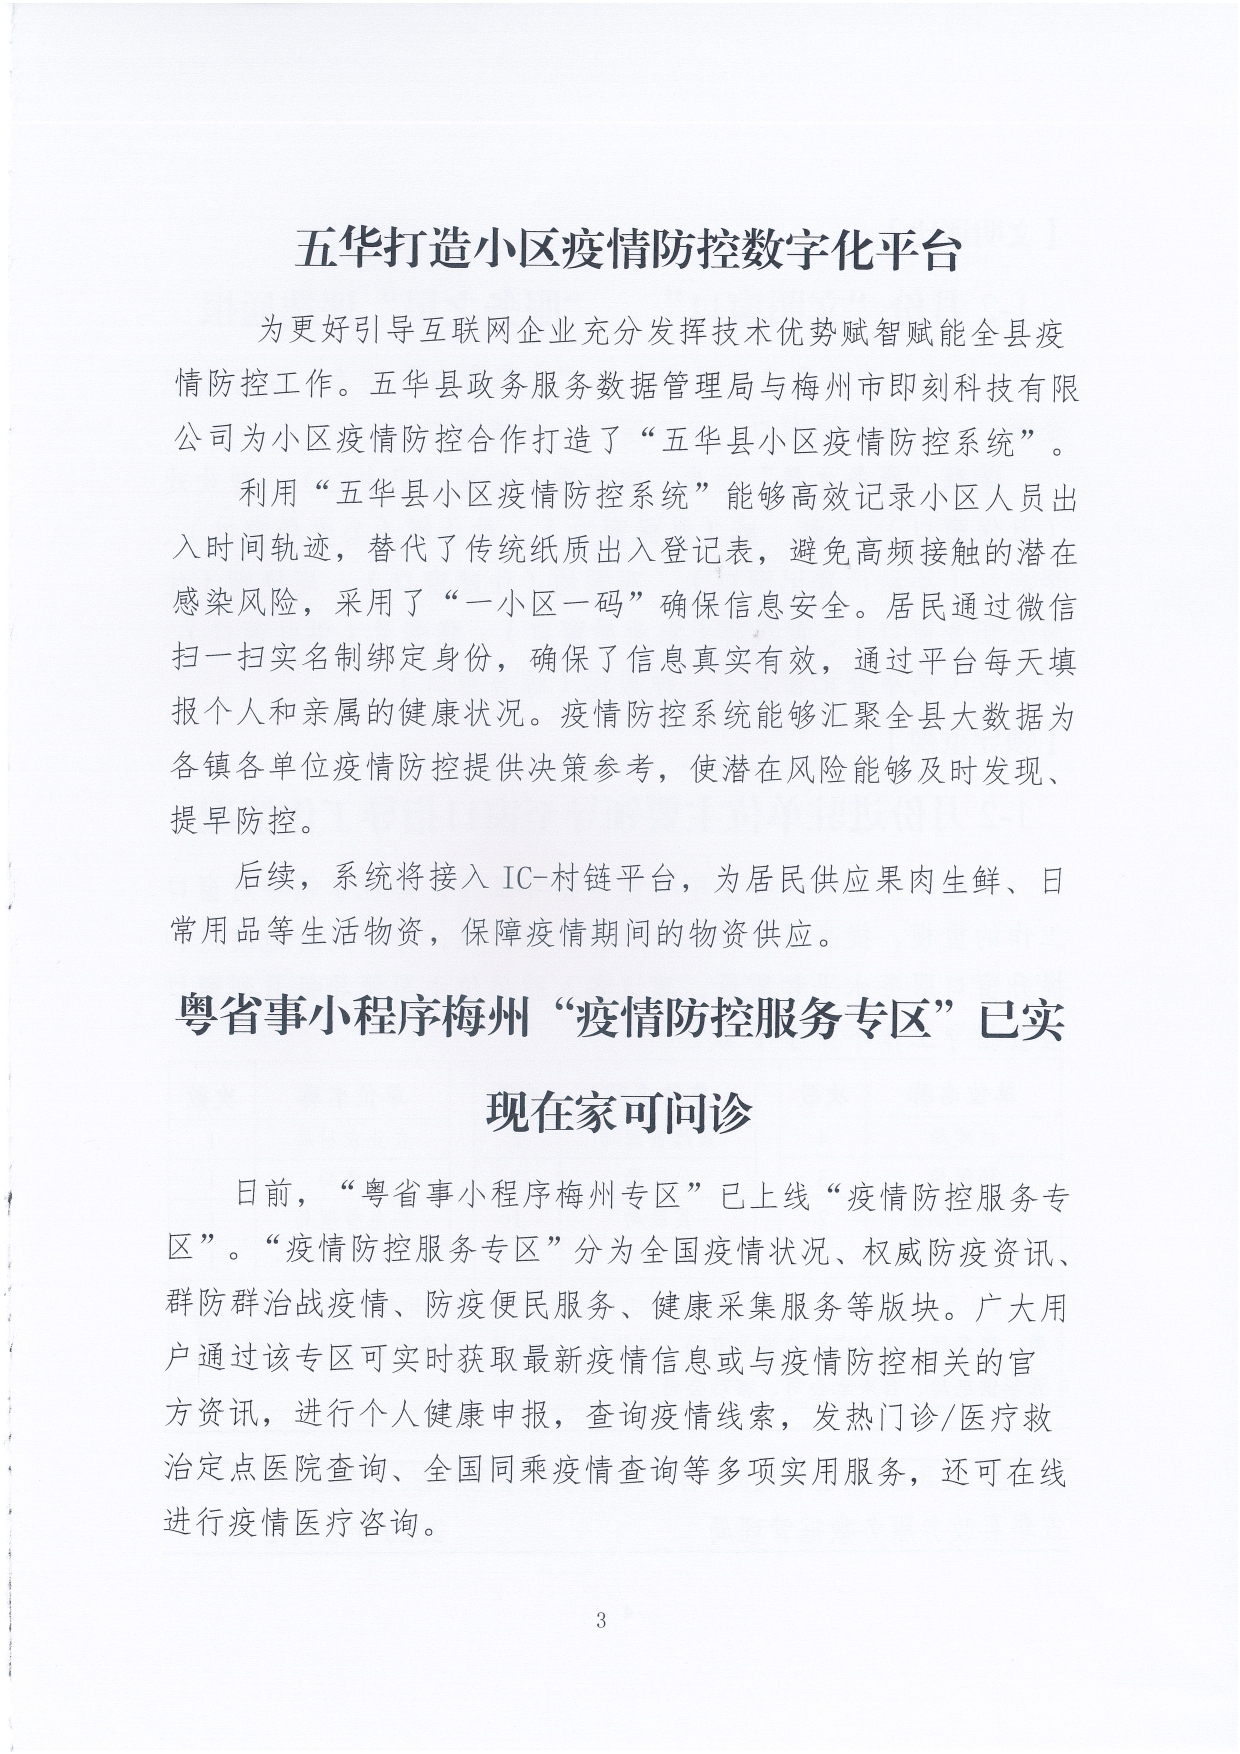 五华县政务服务数据管理局简报（2020年第1期）0002.jpg